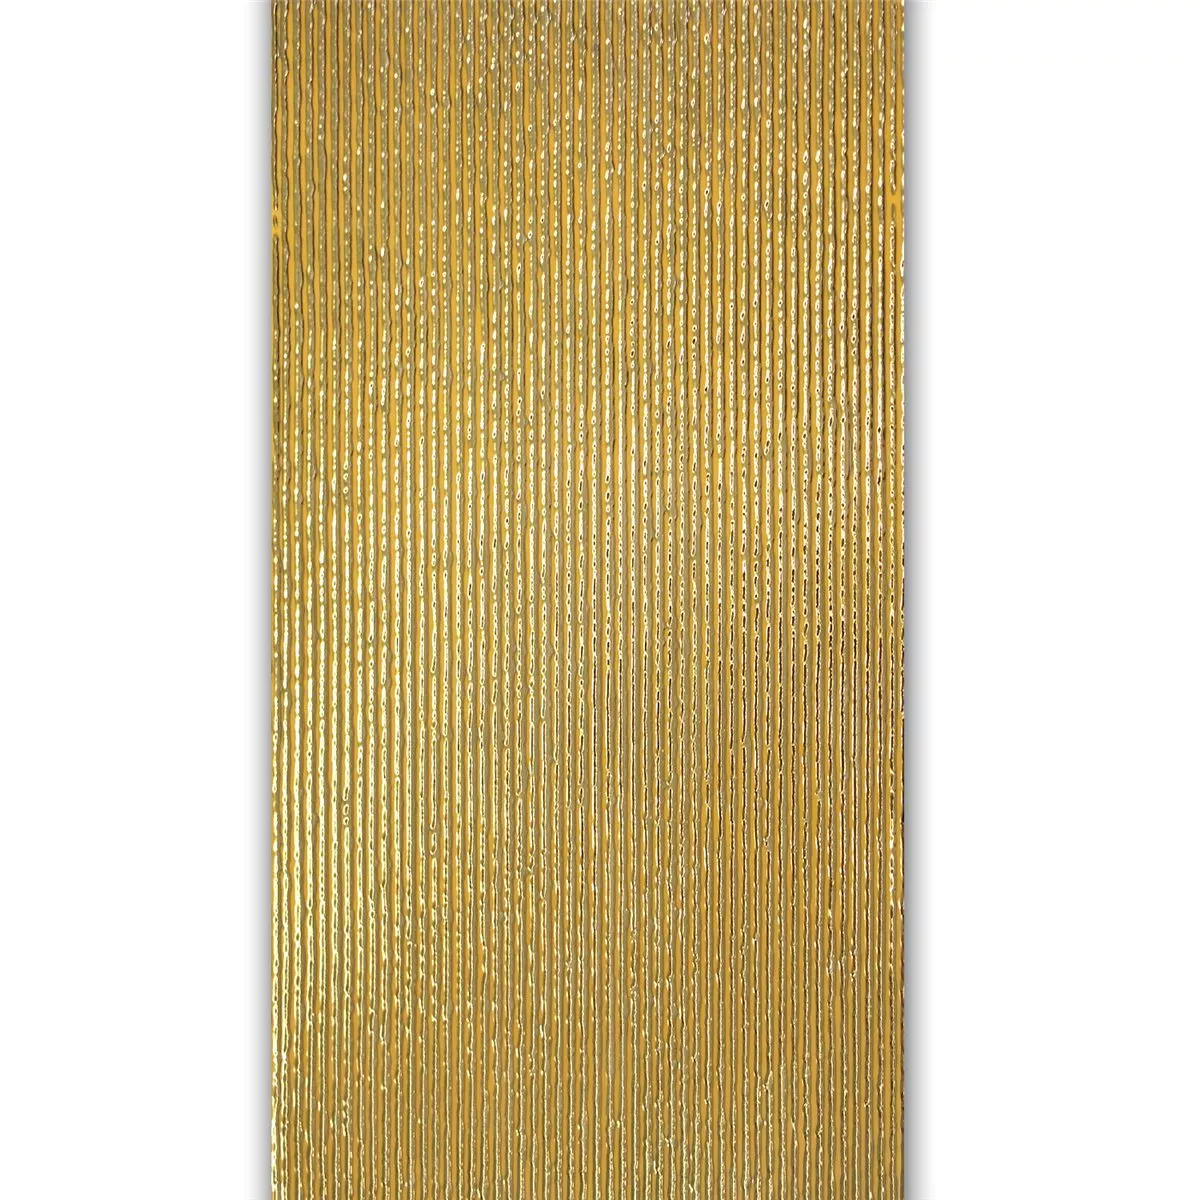 Wand Dekor Fliese Gold 30x60cm